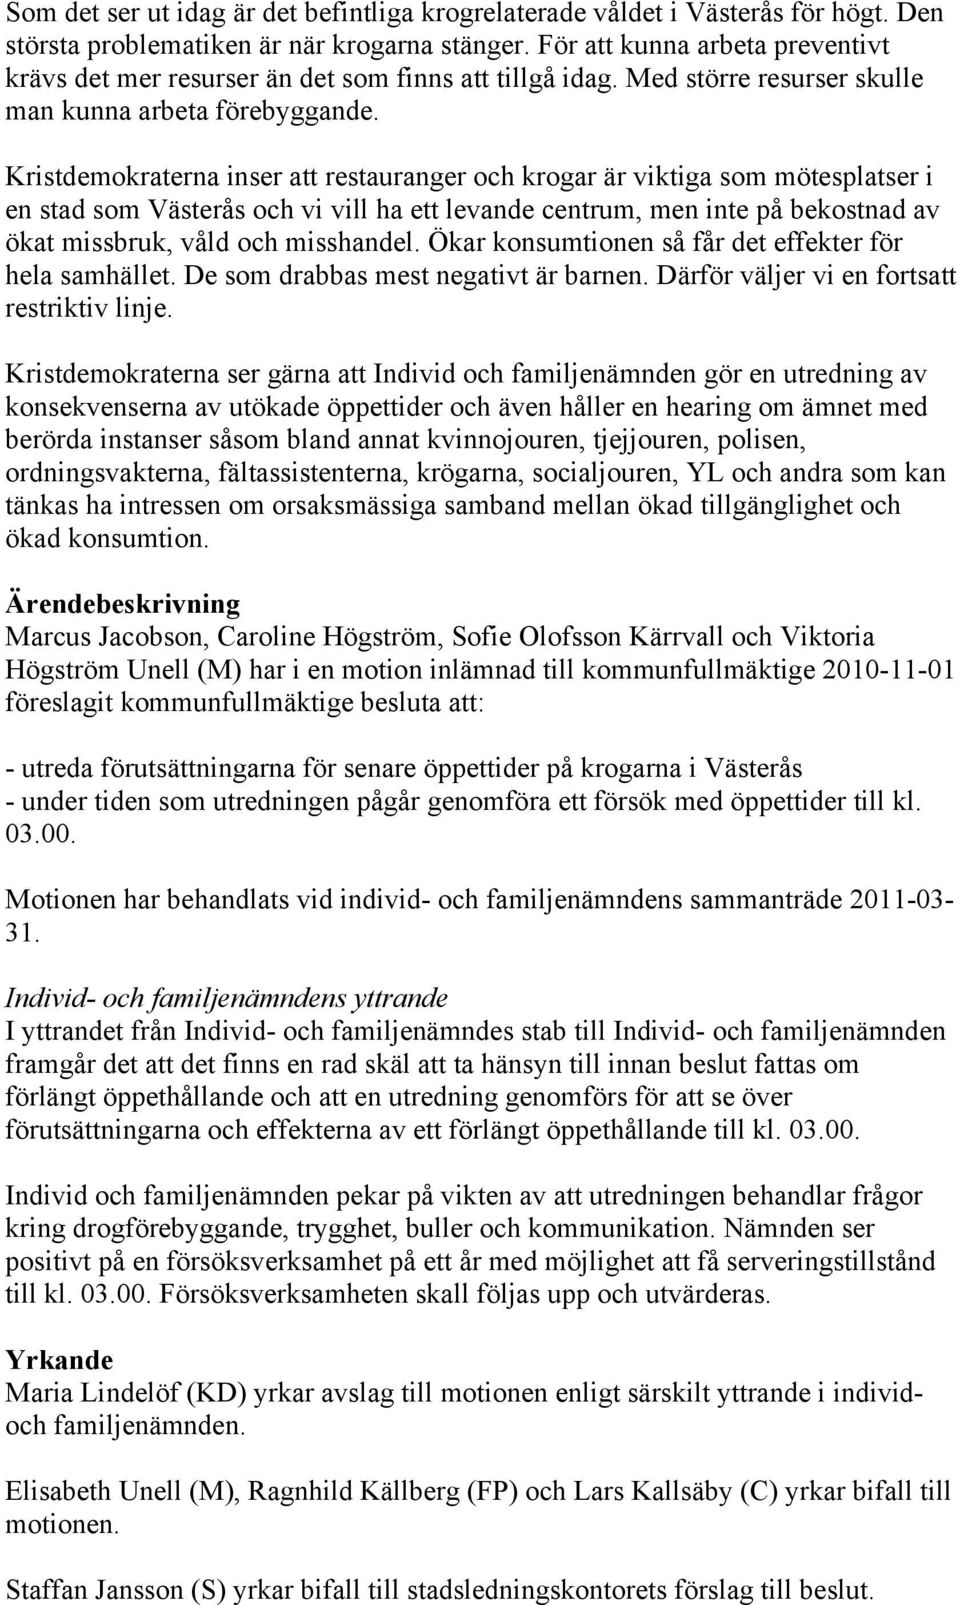 Kristdemokraterna inser att restauranger och krogar är viktiga som mötesplatser i en stad som Västerås och vi vill ha ett levande centrum, men inte på bekostnad av ökat missbruk, våld och misshandel.